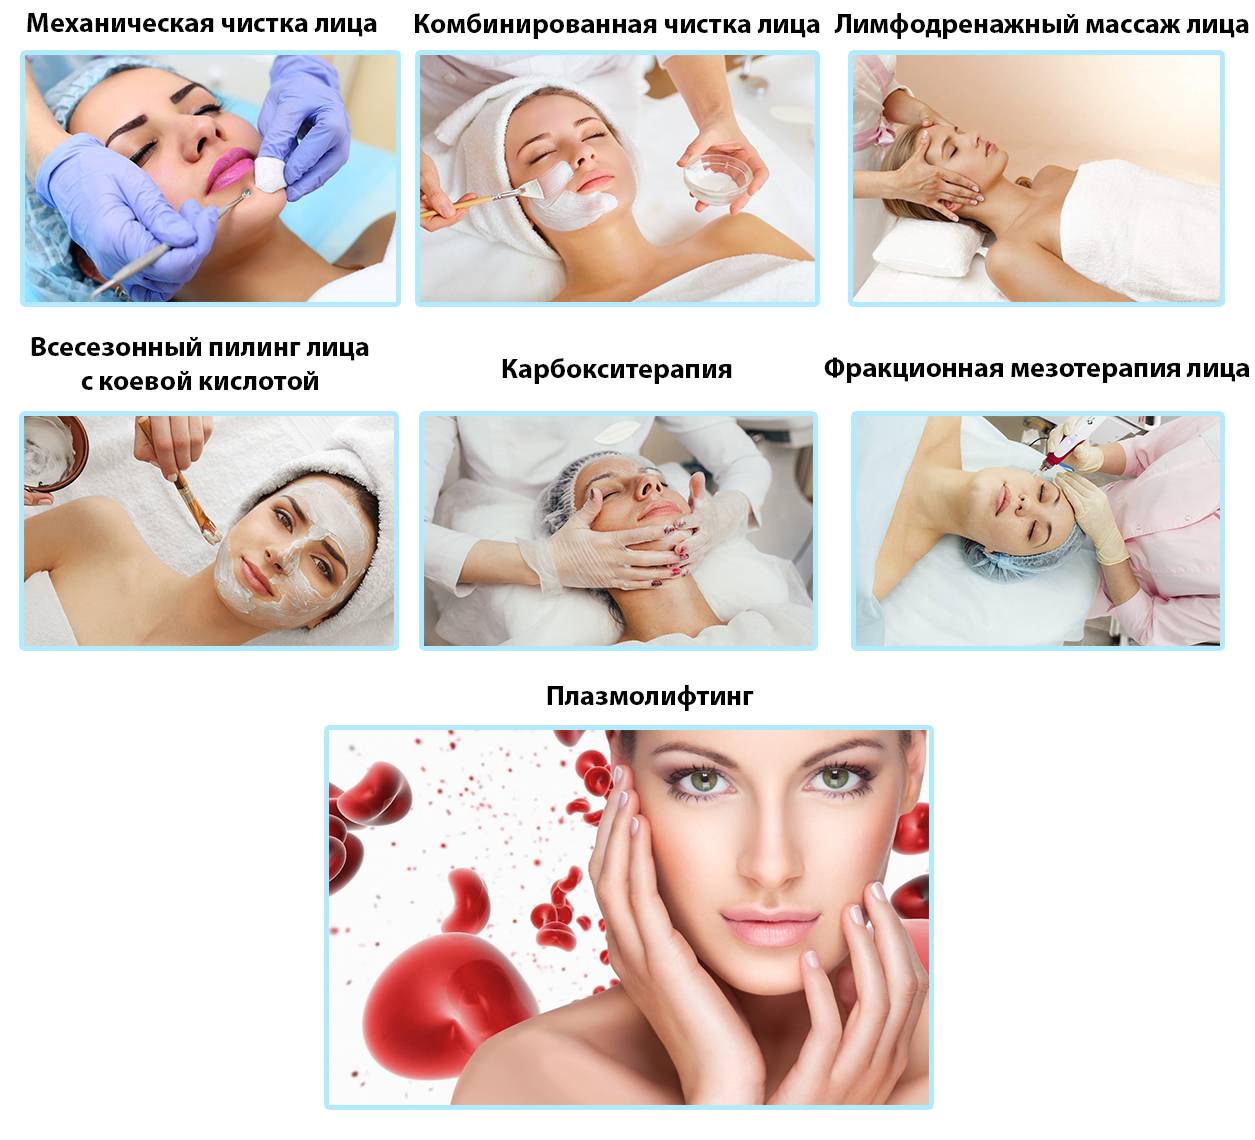 Плазмолифтинг для лица, кожи и волос: преимущества, особенности